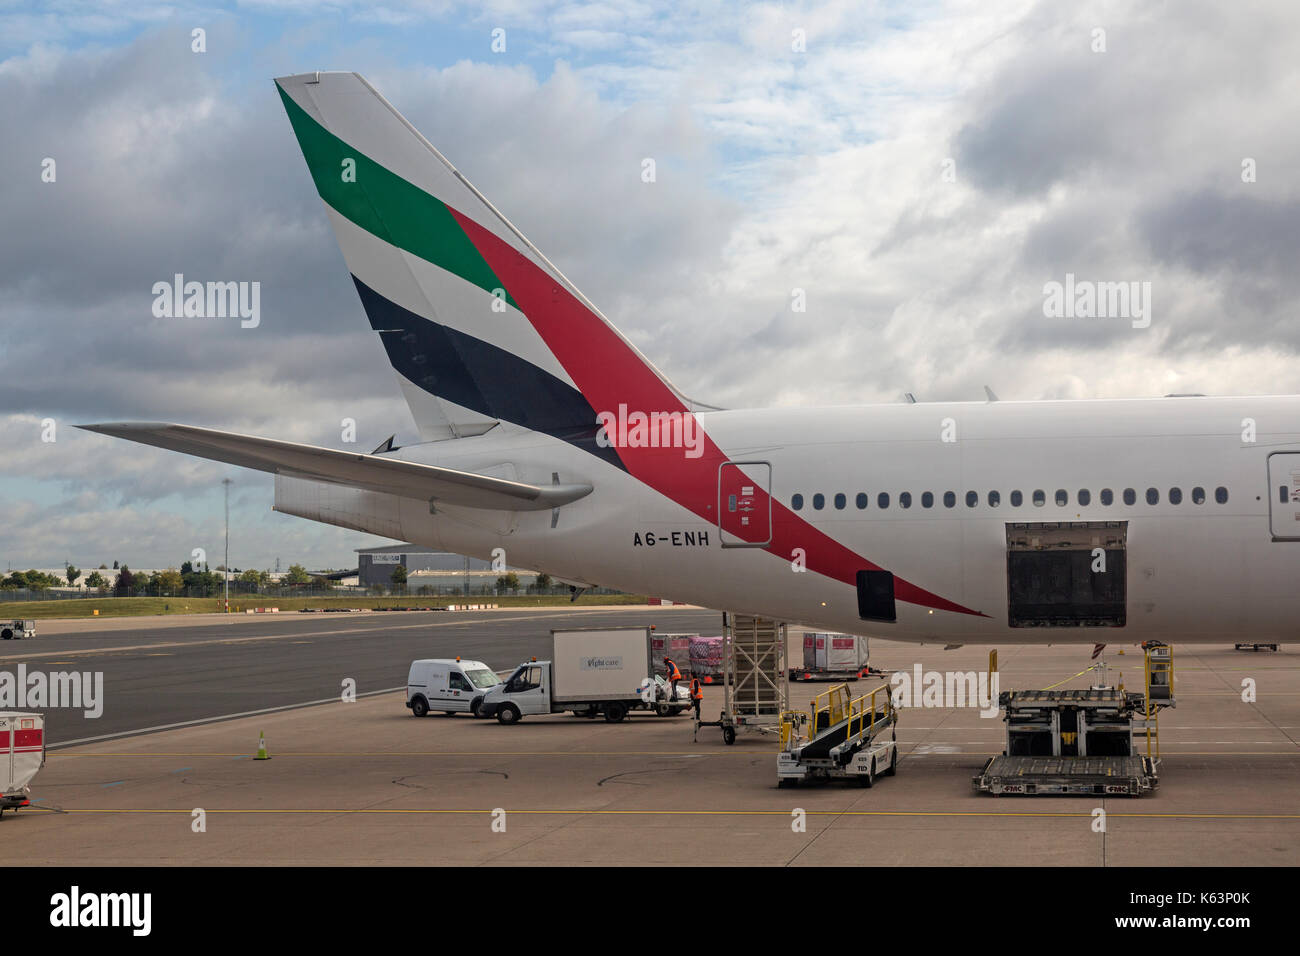 Boeing 777 de la compagnie aérienne Emirates, A6-ENH, d'être chargés à l'Aéroport International de Birmingham en Angleterre. La photo montre la queue et le fret et assurance en cours de chargement. Banque D'Images